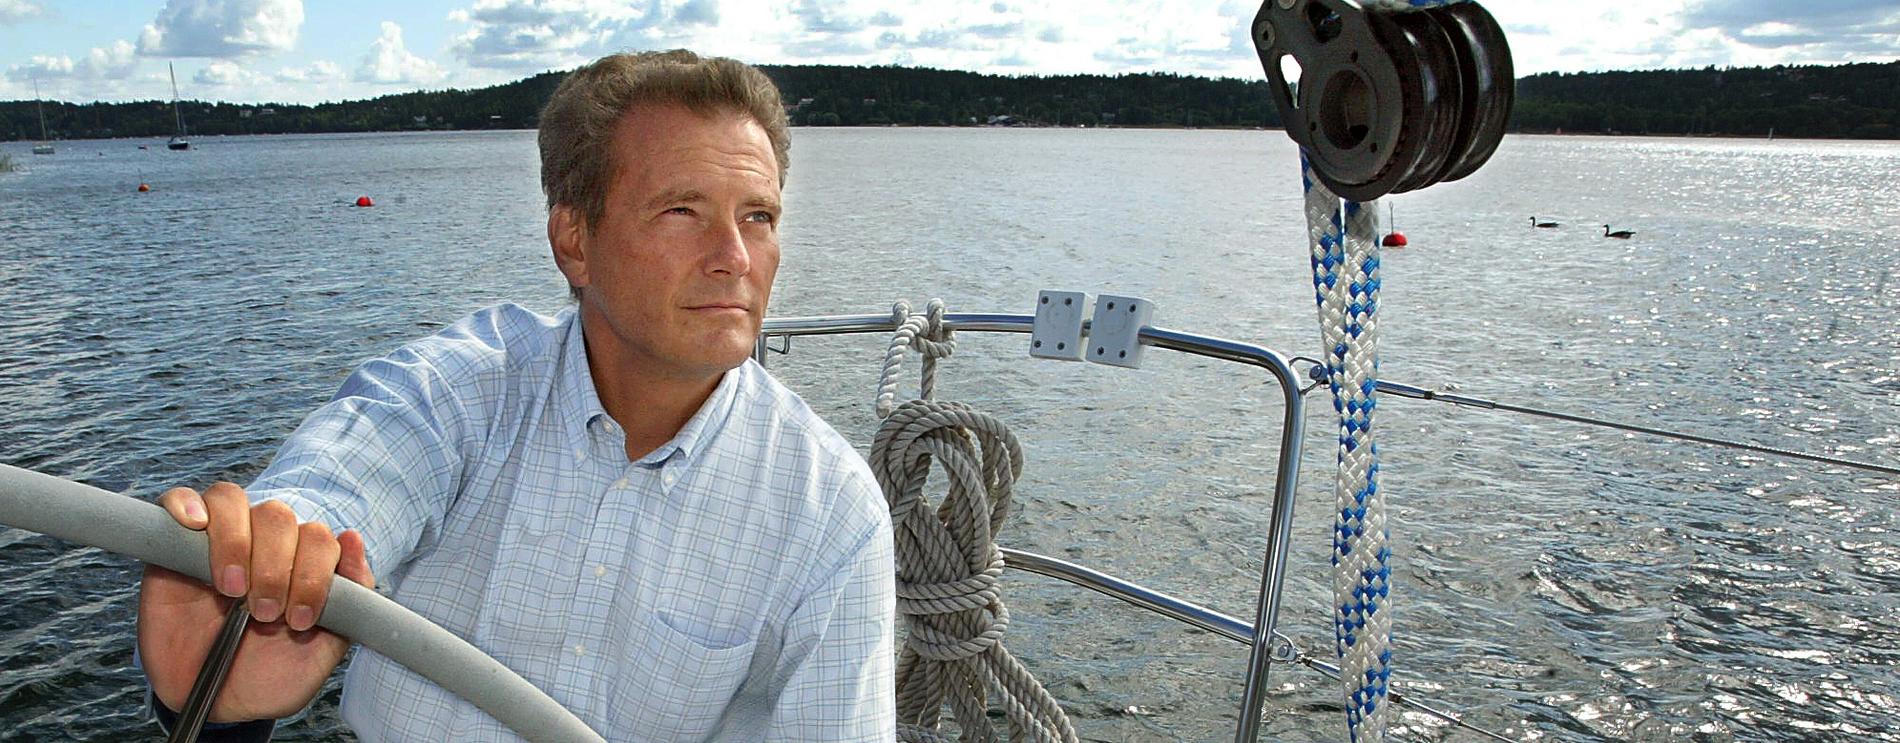 Carl-Henrik Svanberg är sedan länge en engagerad seglare. Här på en bild från 2003.